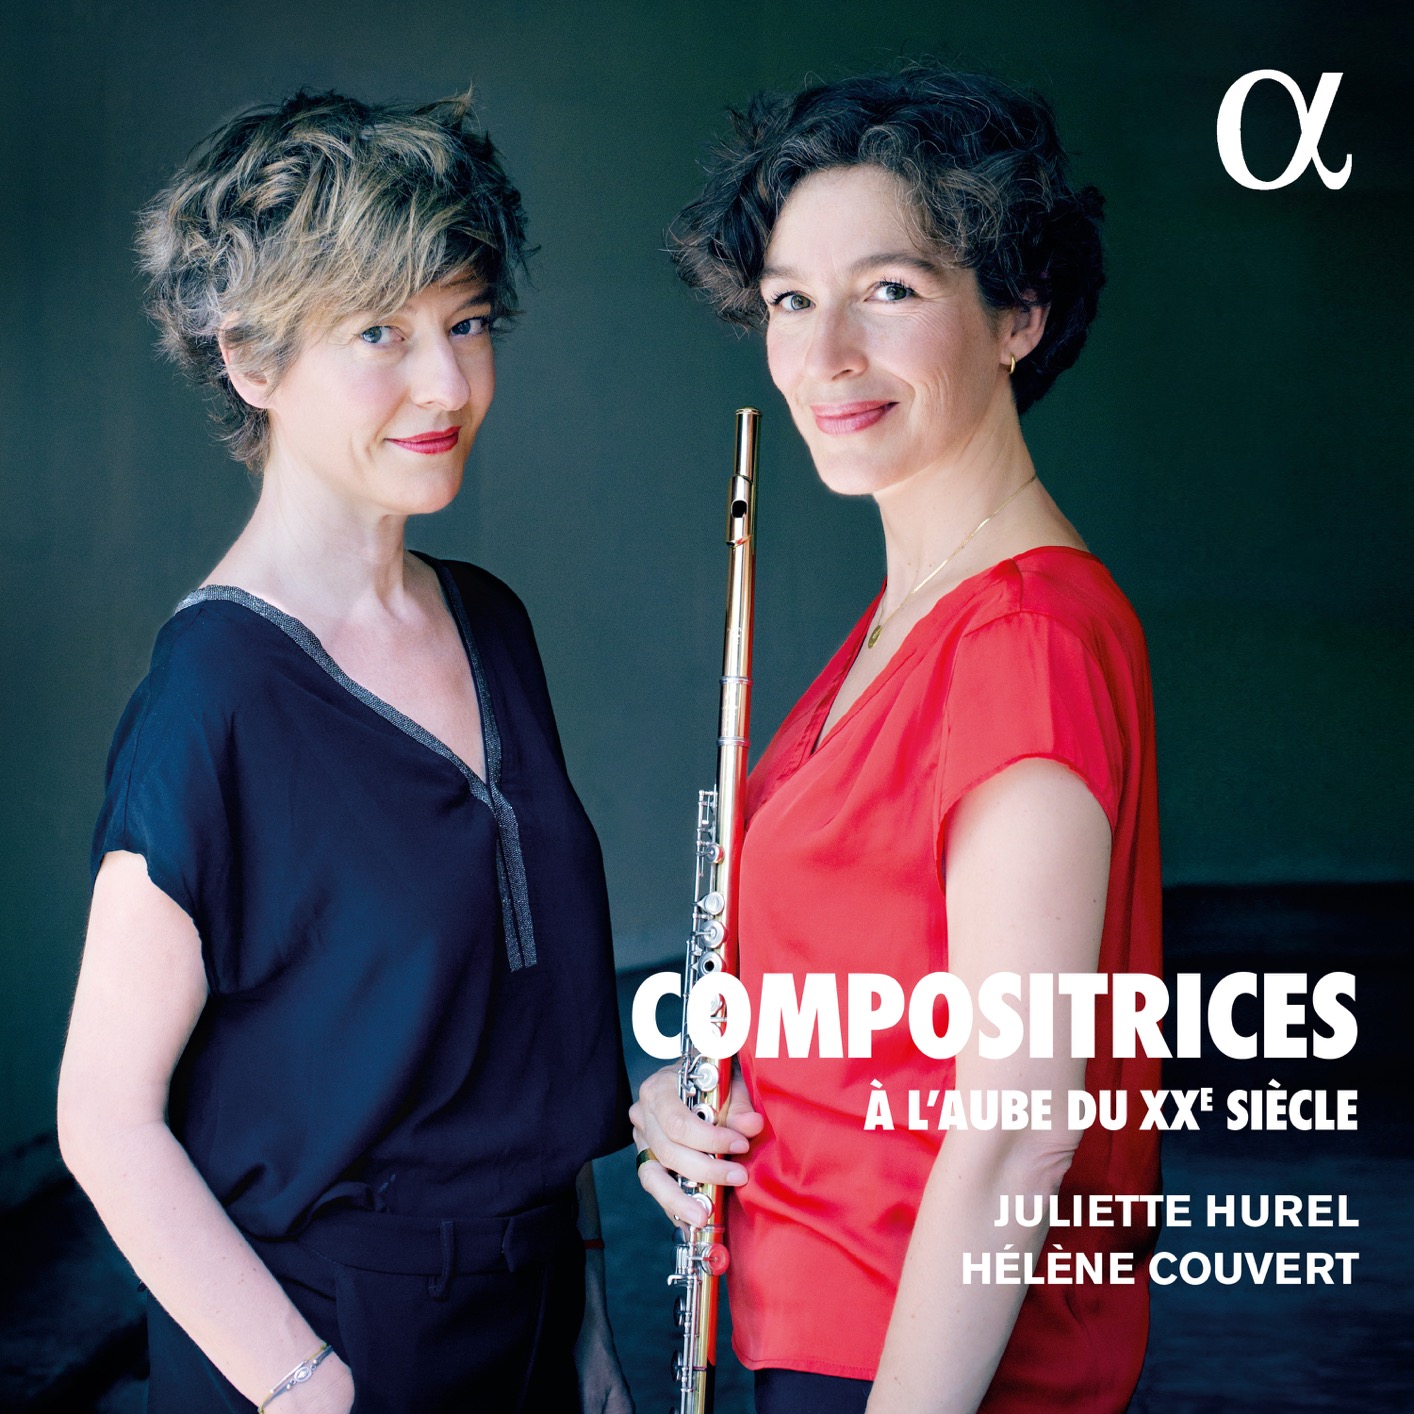 Juliette Hurel & Helene Couvert - Compositrices : A l’aube du XXe siecle (2020) [FLAC 24bit/48kHz]